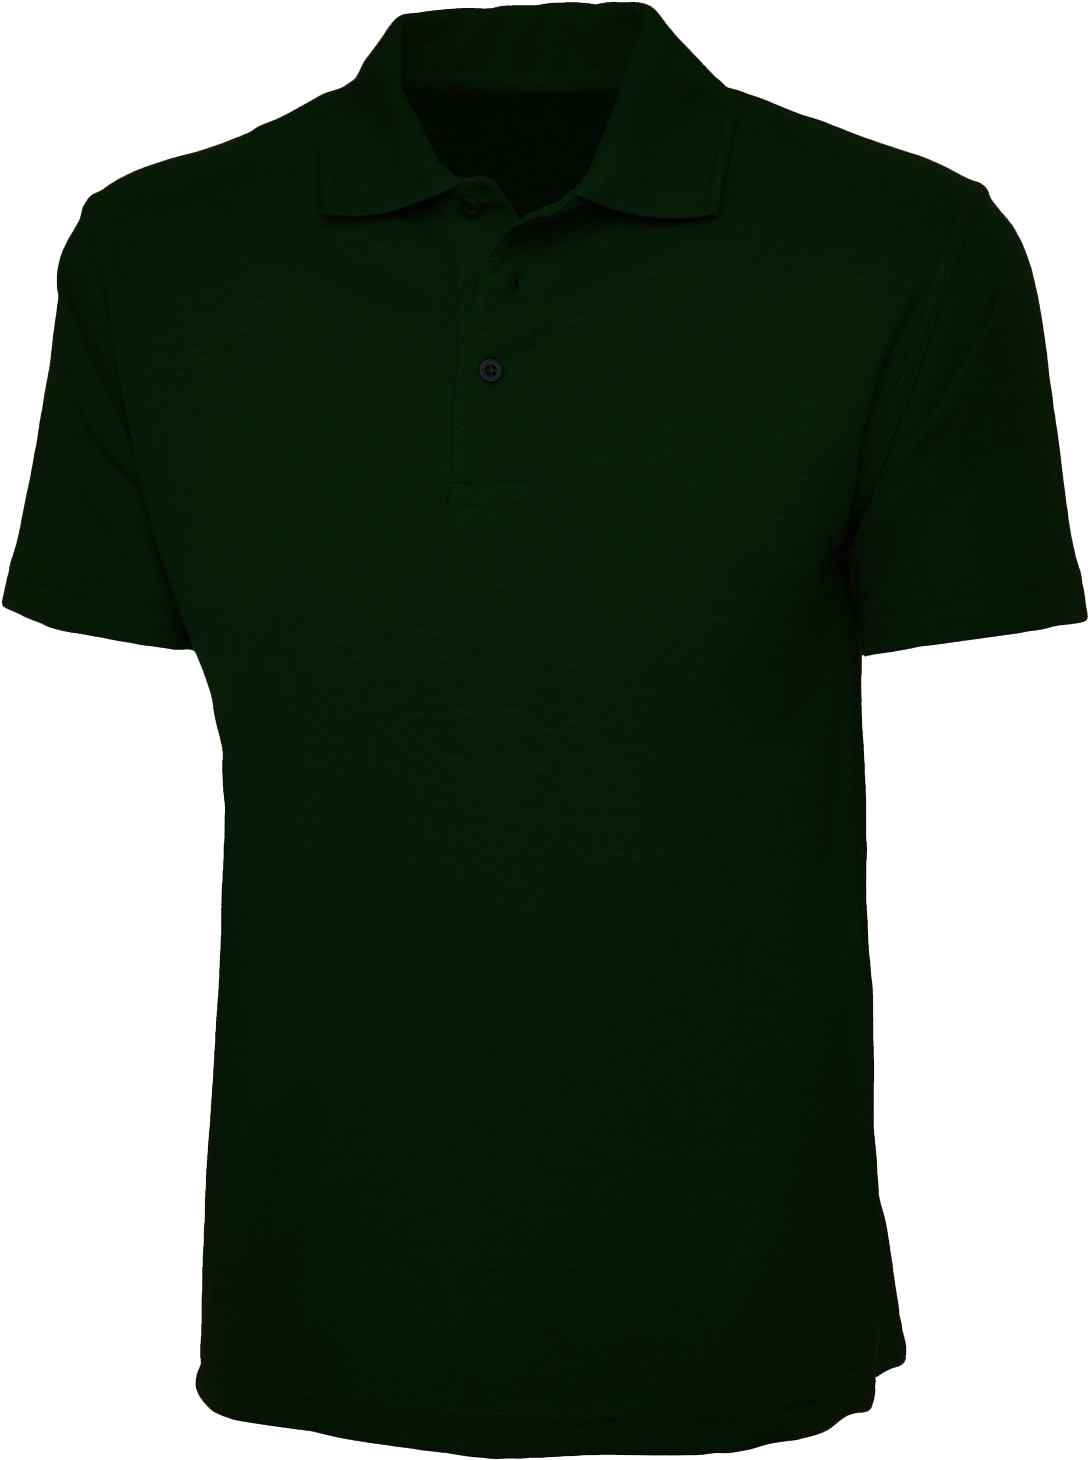 Plain Moss Green Polo Shirt - Moss Green Polo Shirt (1200x1600), Png Download